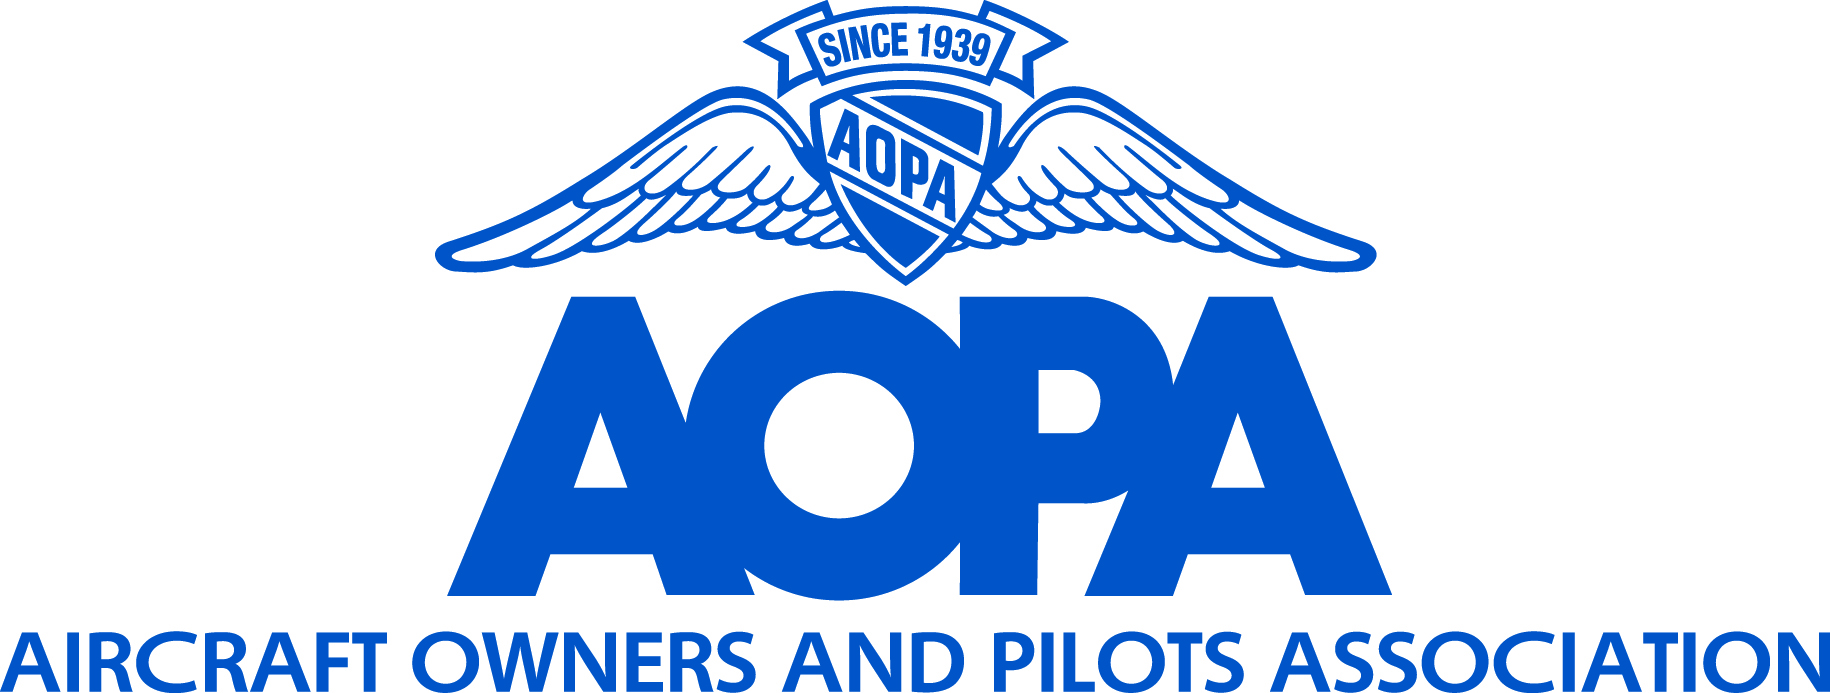 Aopa Logo PNG - 101988